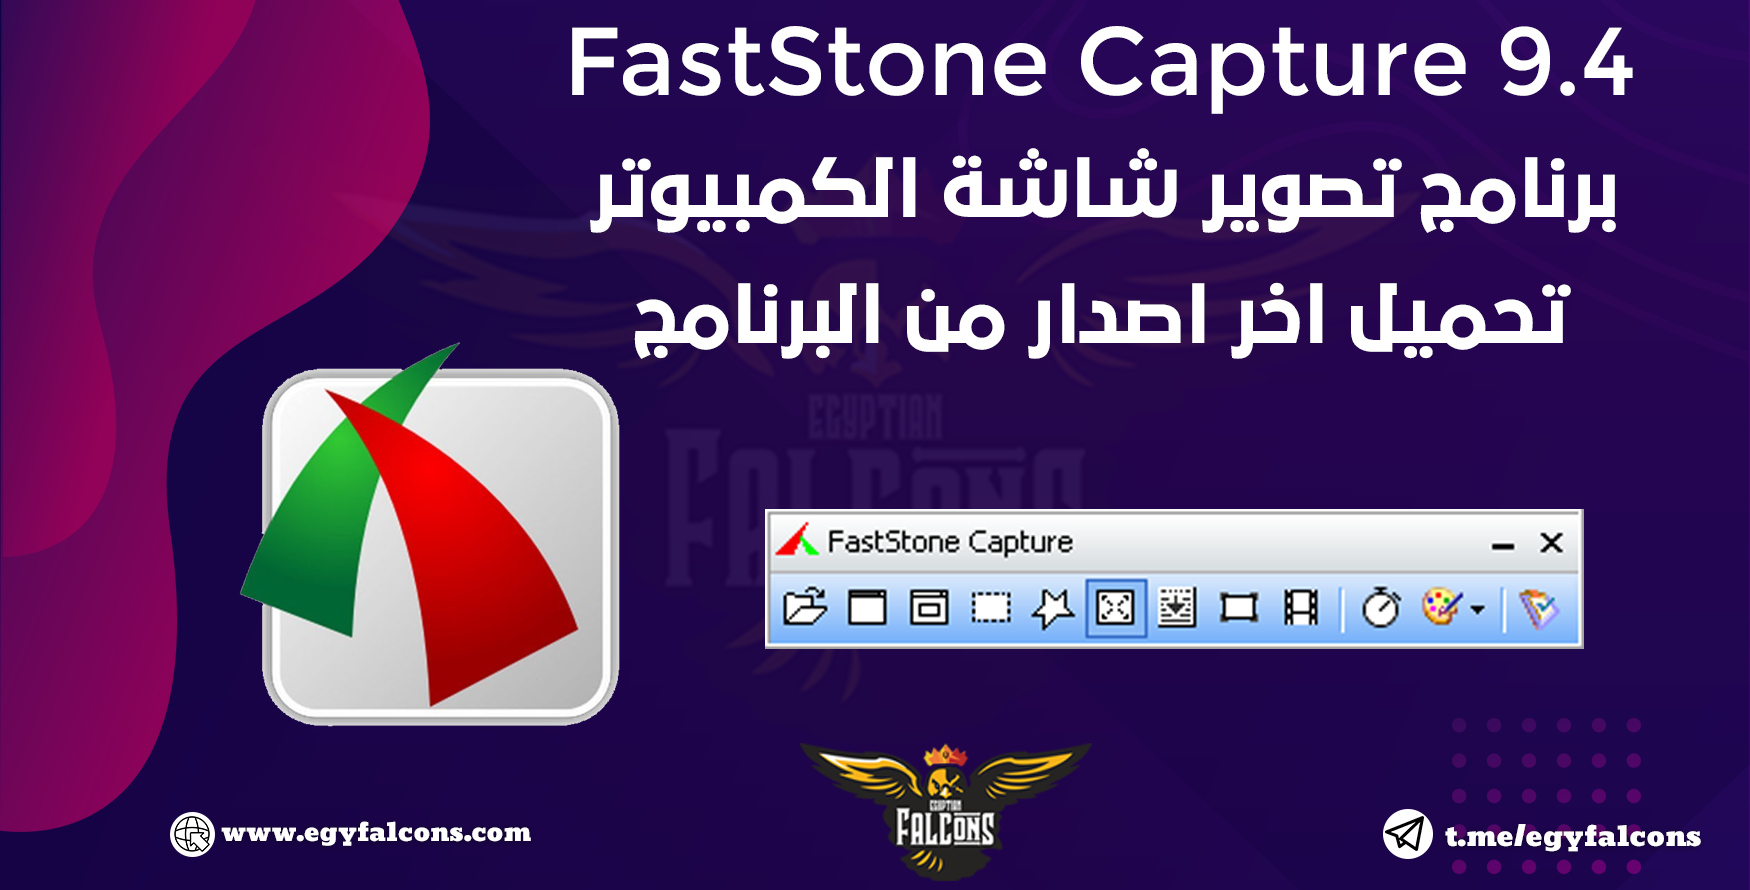 تحميل برنامج تصوير الشاشة السريع | FastStone Capture 9.4 full | نسخة محمولة مفعلة